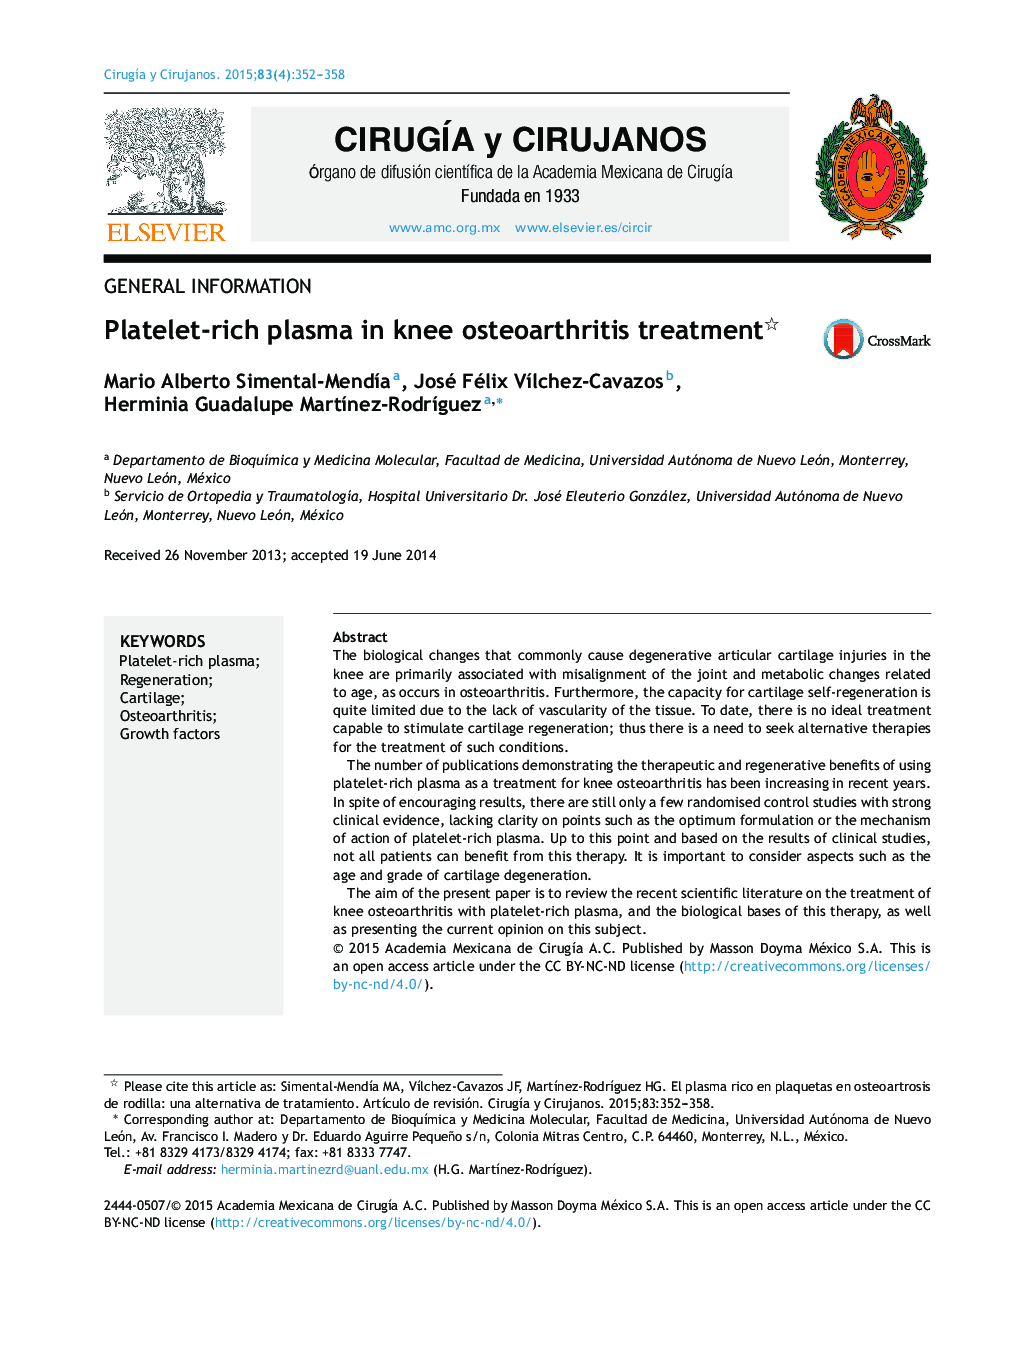 پلاسمای غلیظ پلاکت در درمان استئوآرتریت زانو 